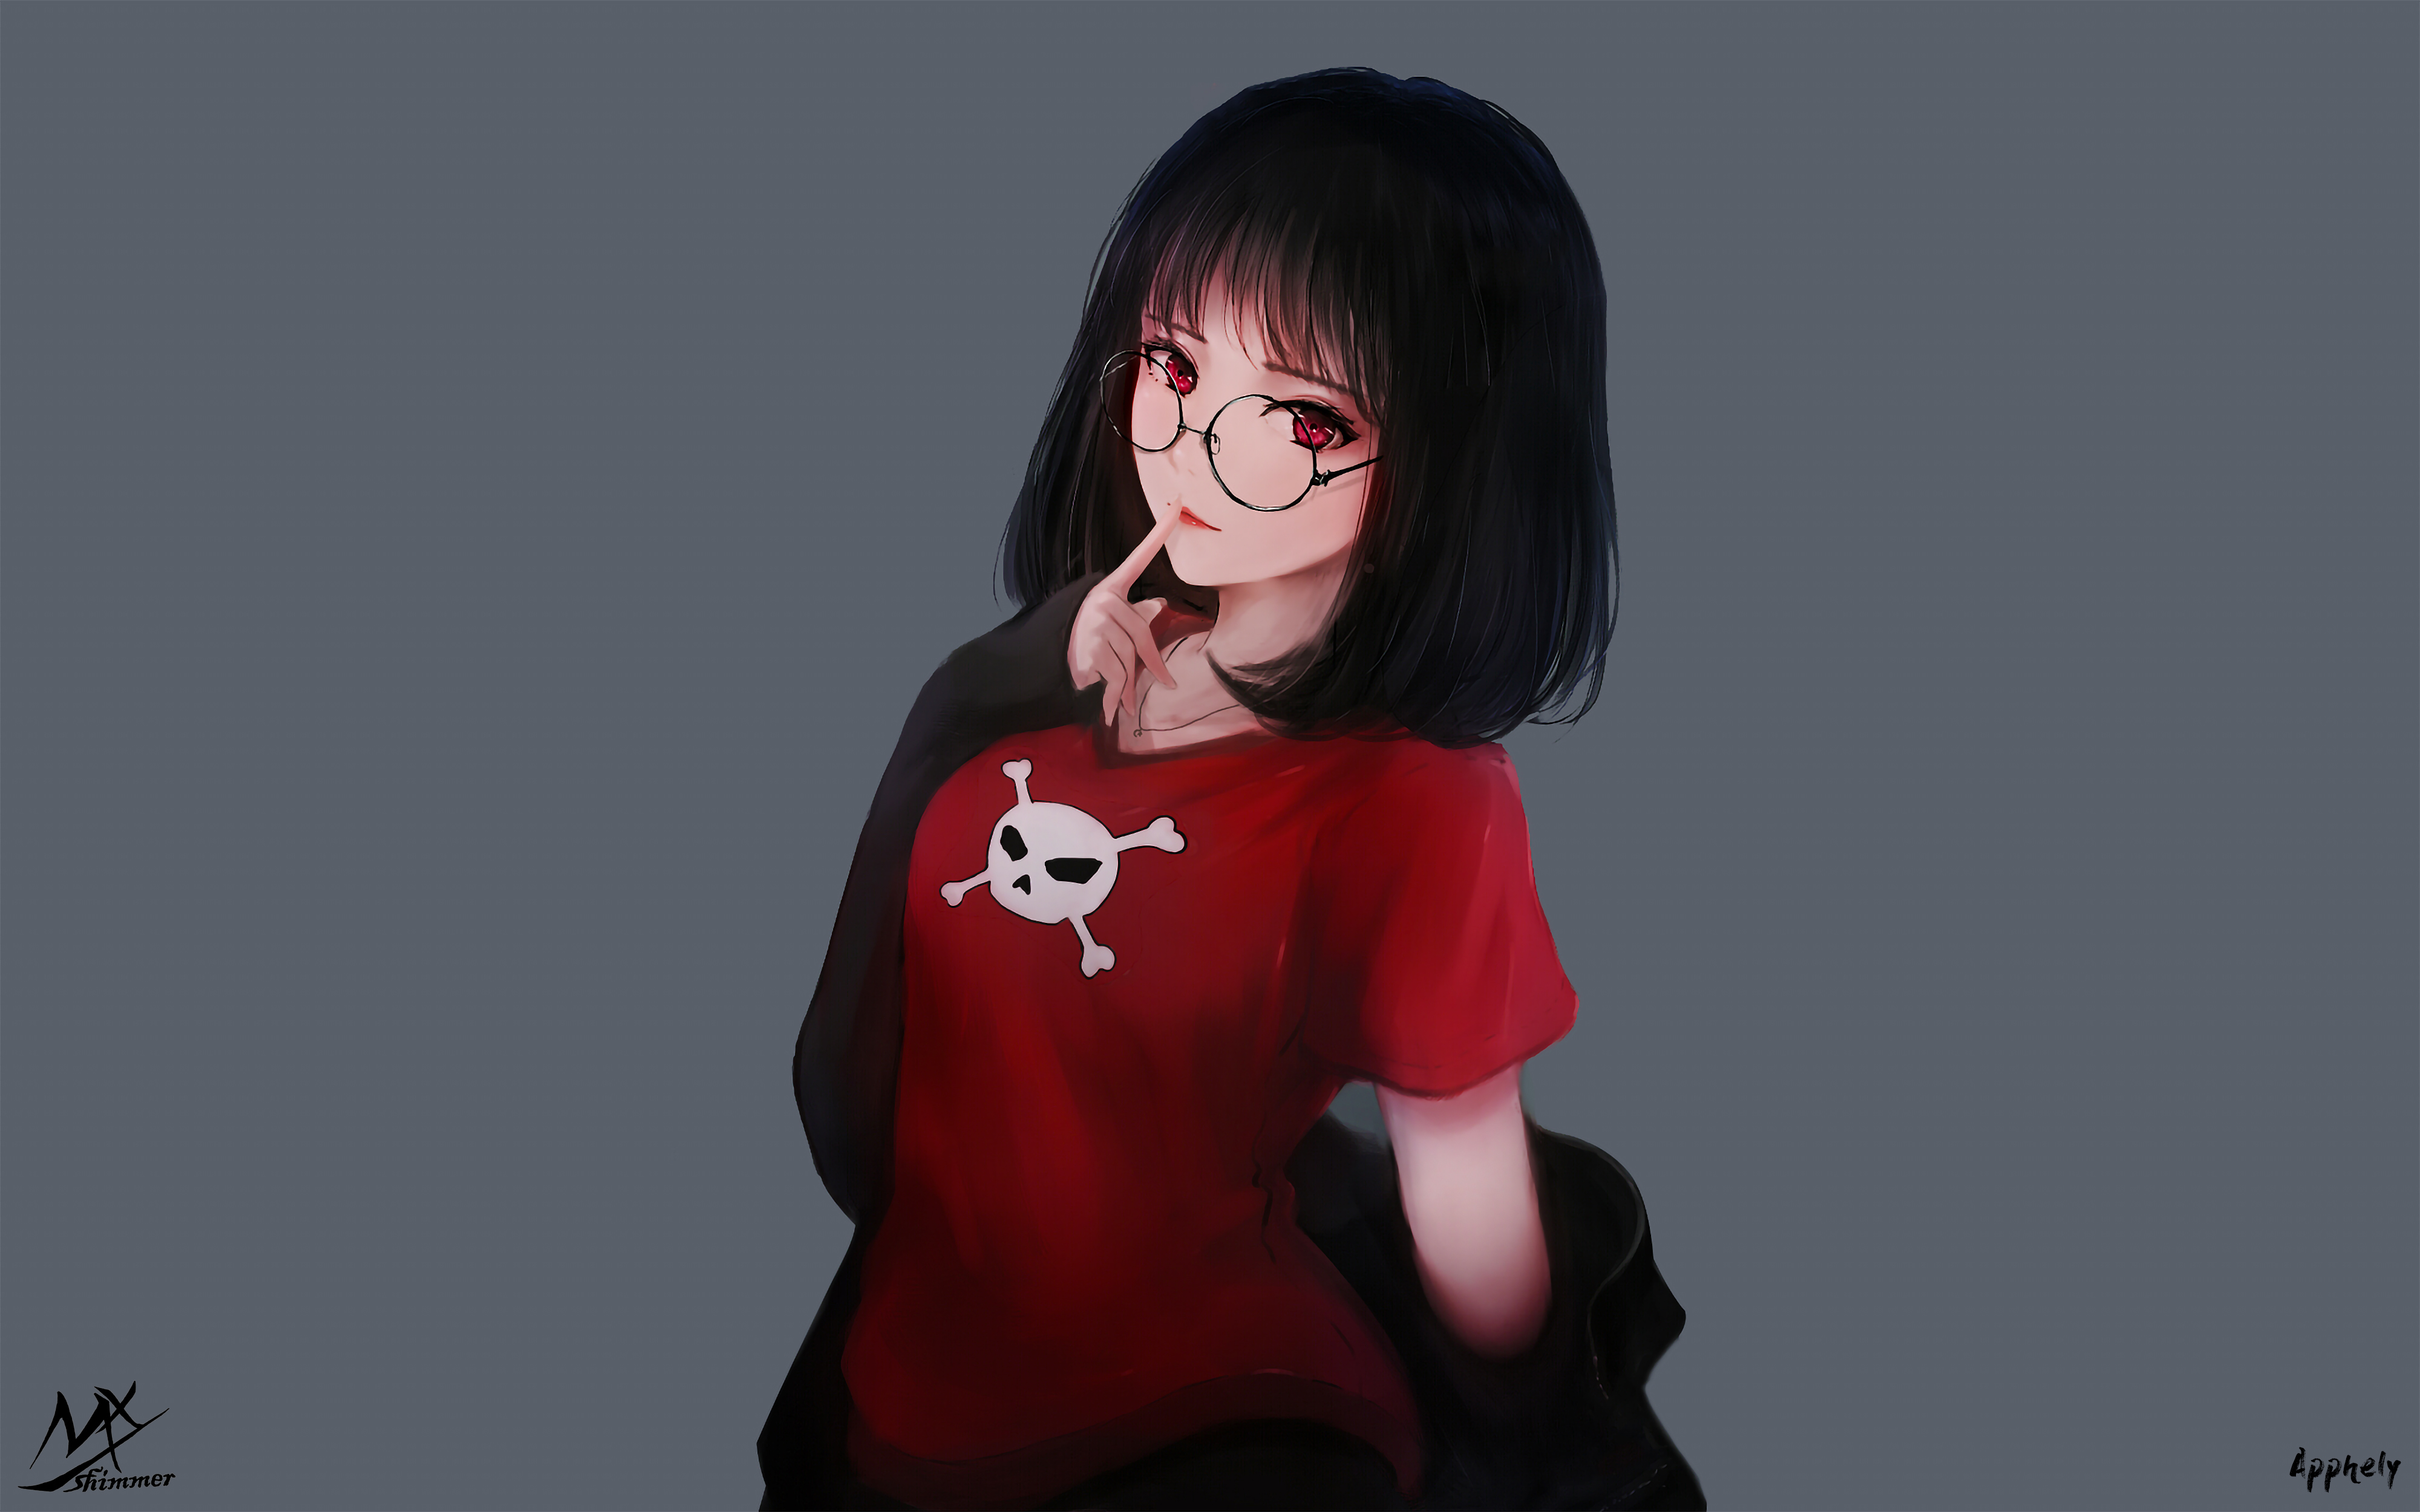 Anime 4000x2500 MX shimmer anime girls glasses thinking skull skull and bones red eyes T-shirt